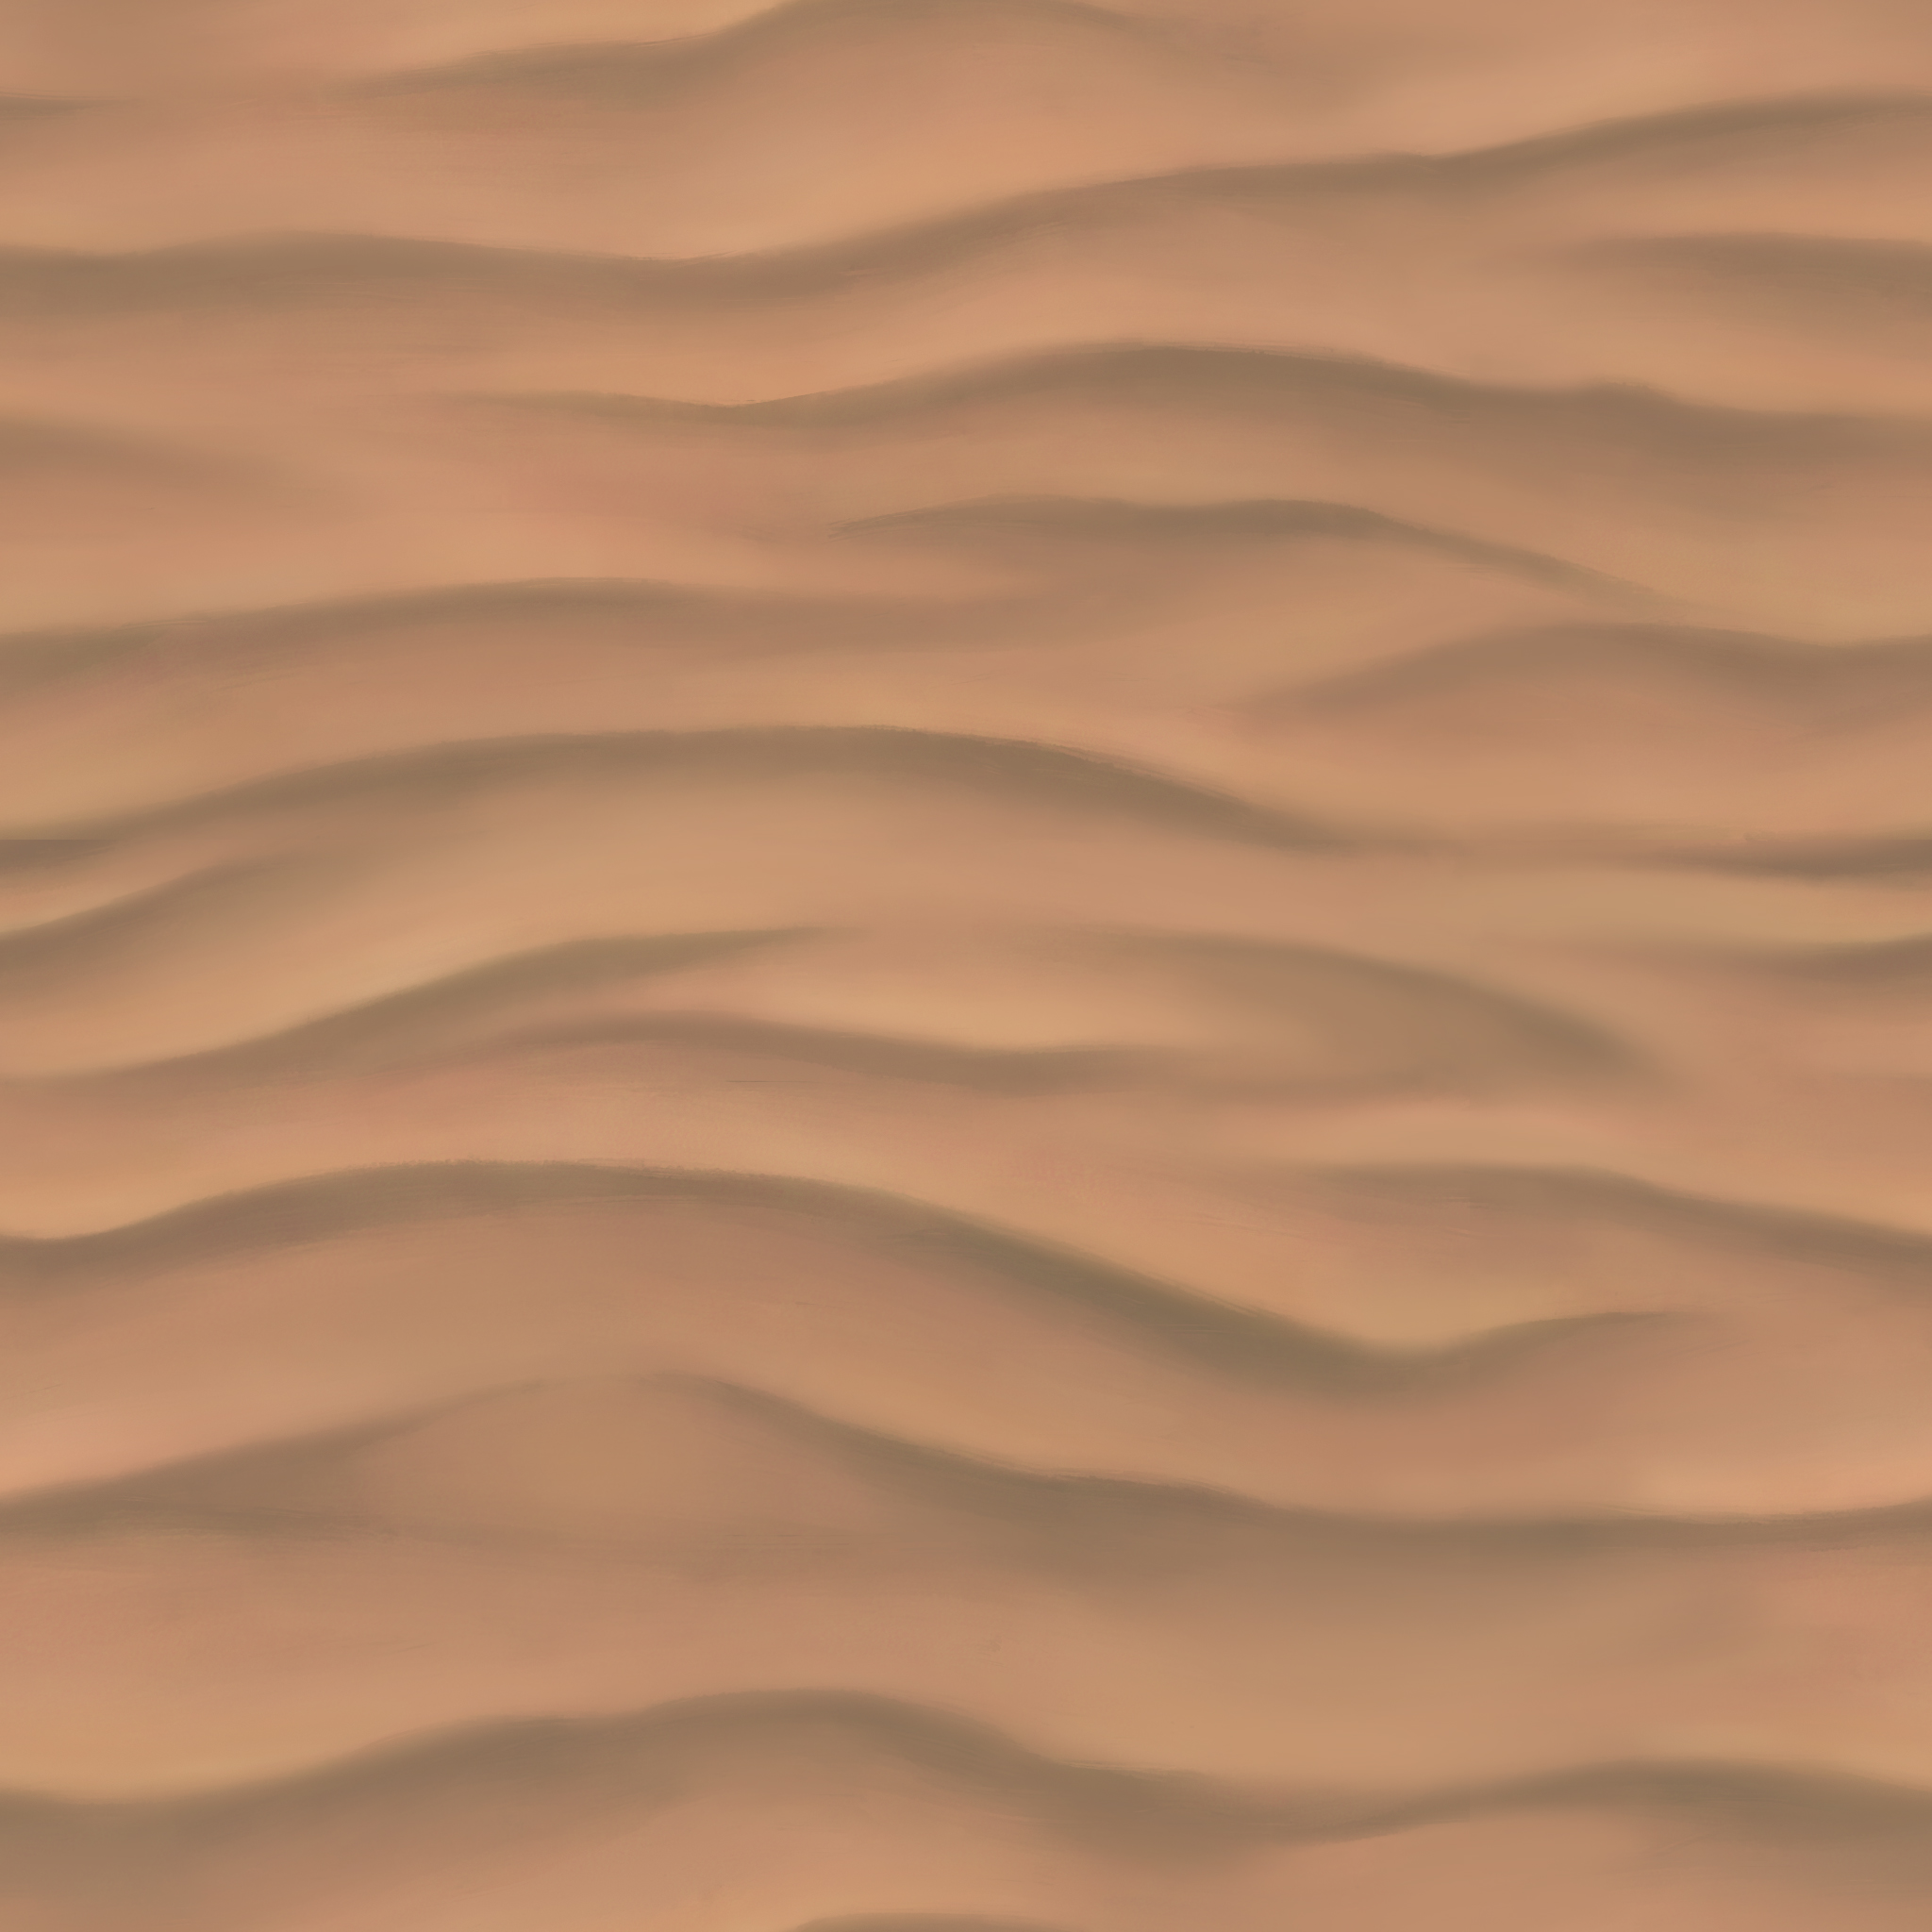 Desert Sand Texture Seamless